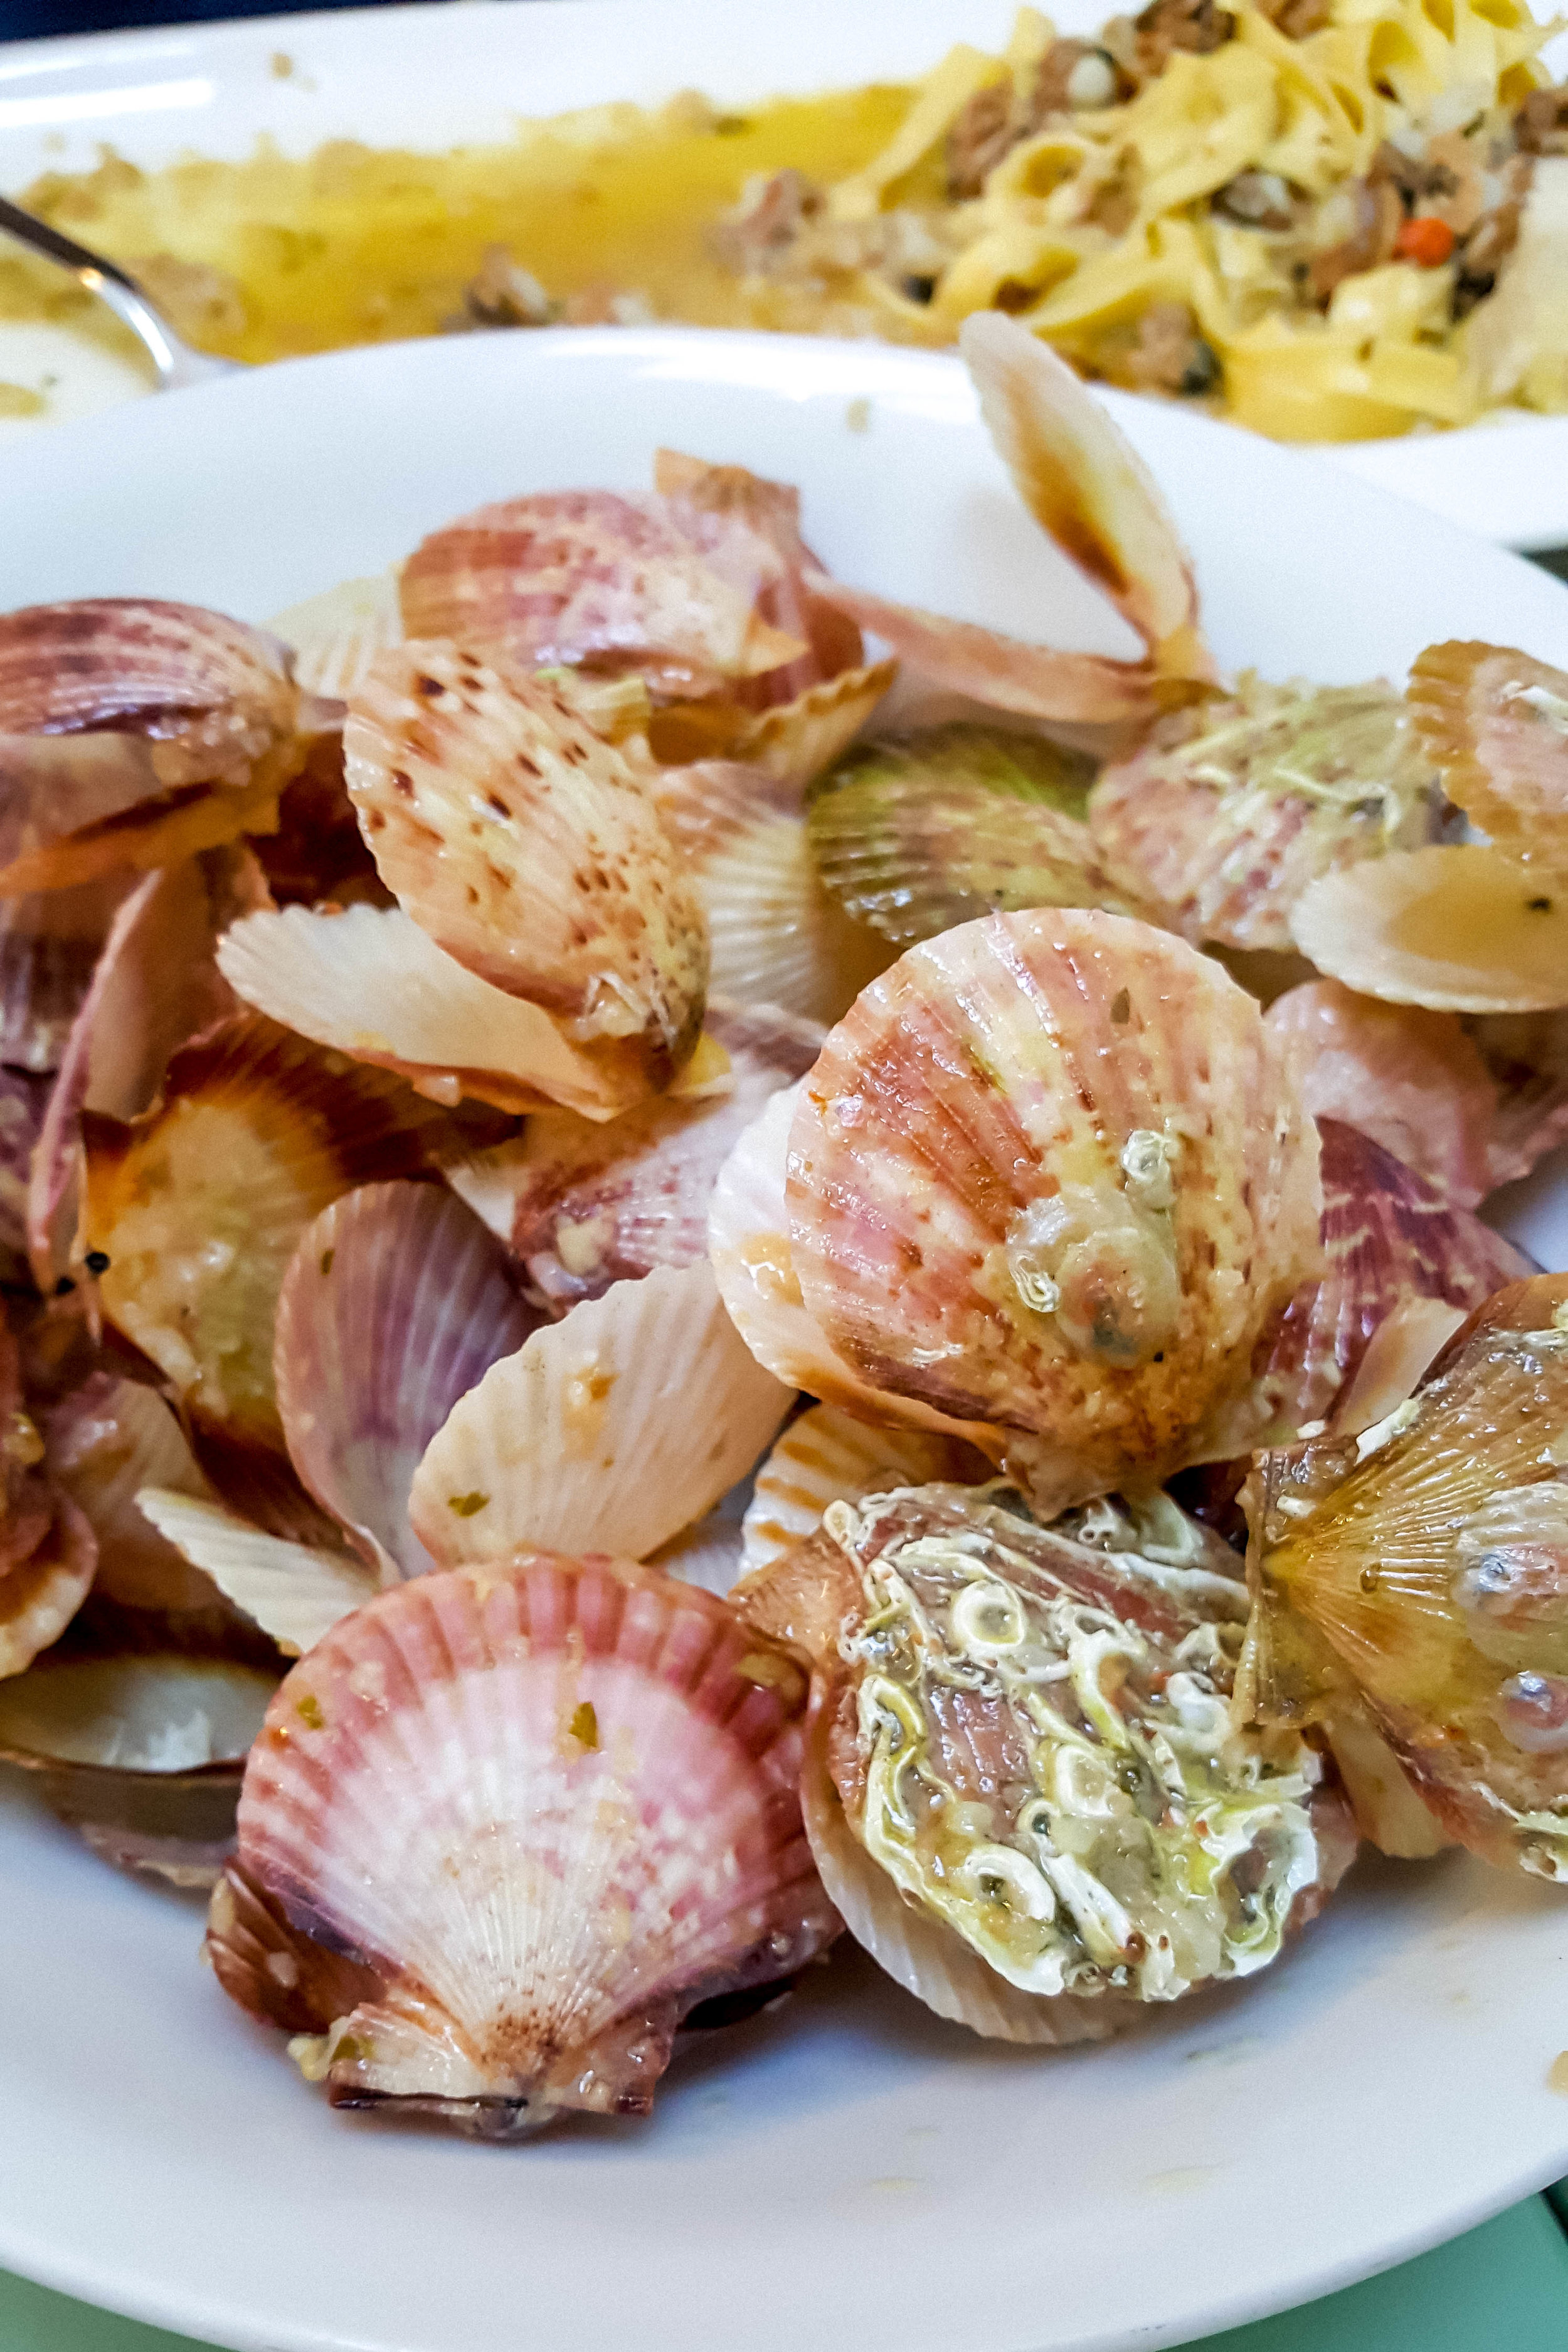 Mussels at Trattoria Vodnjanka, Istria